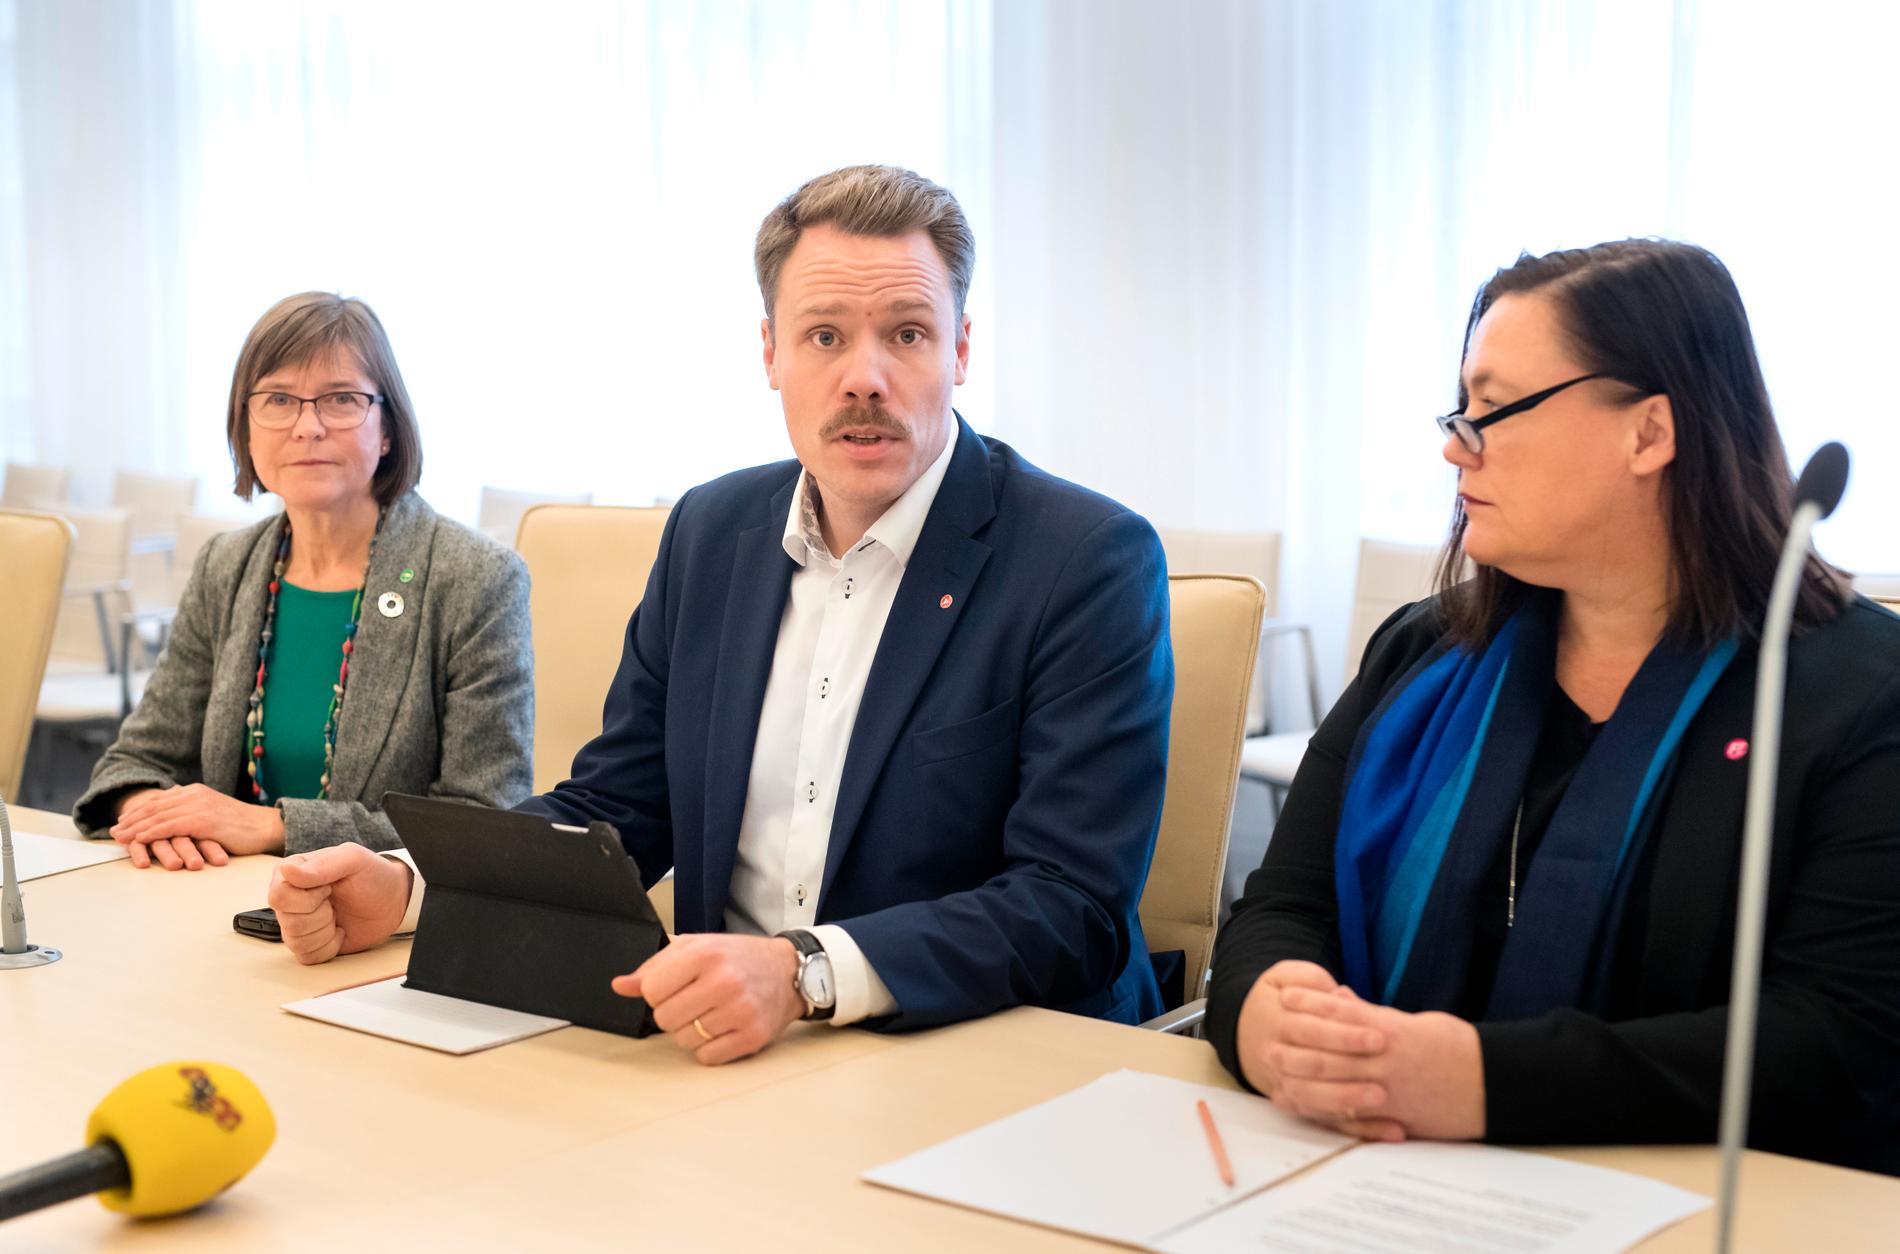 Daniel Bernmar (v), Karin Pleijel (Mp) och Stina Svensson (Fi), kommunpolitiker i Göteborg.